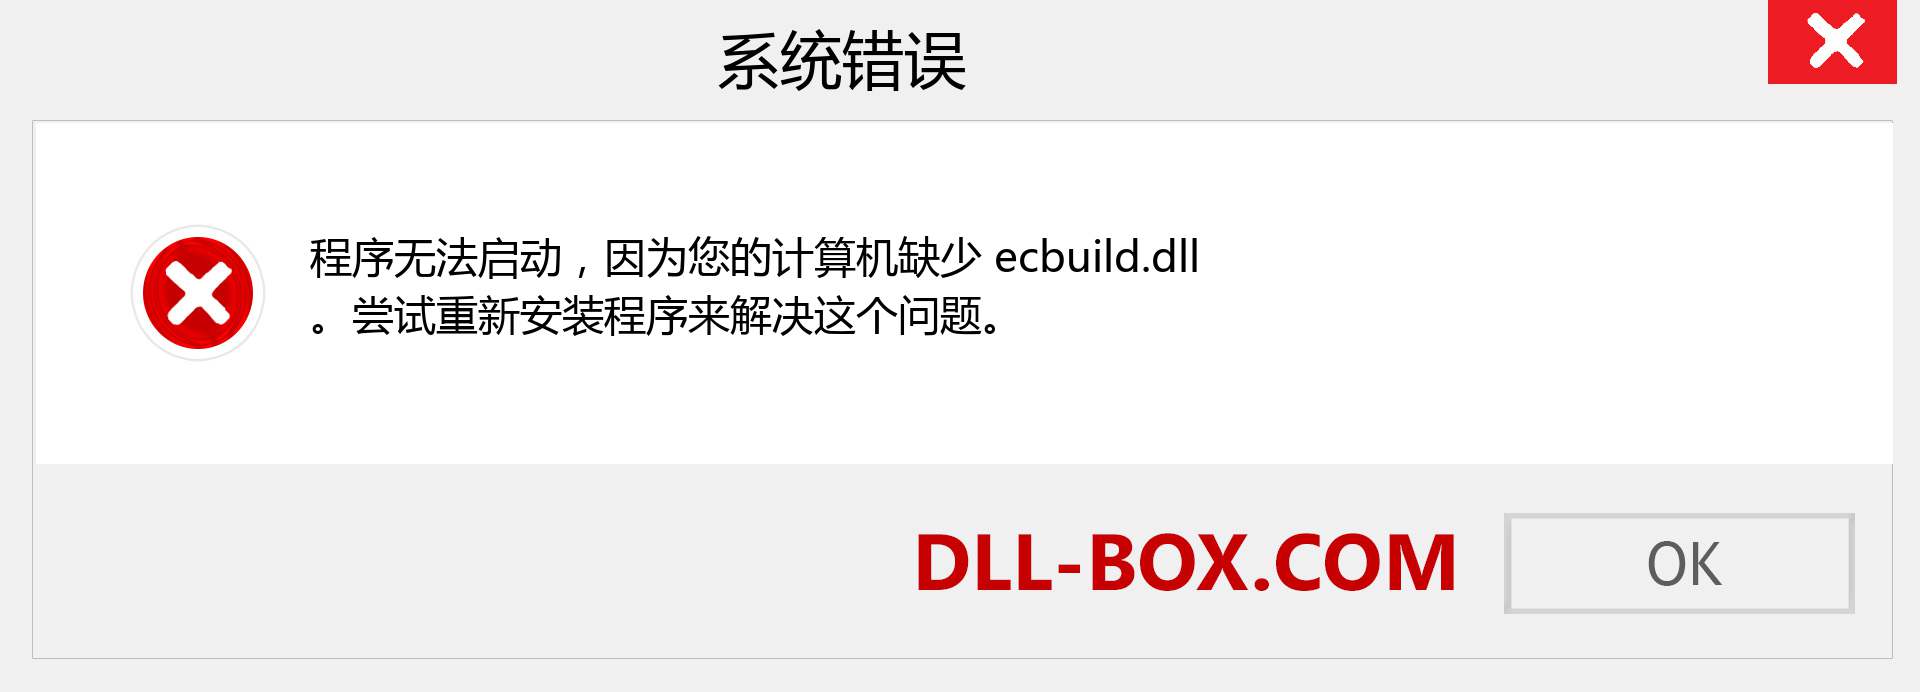 ecbuild.dll 文件丢失？。 适用于 Windows 7、8、10 的下载 - 修复 Windows、照片、图像上的 ecbuild dll 丢失错误